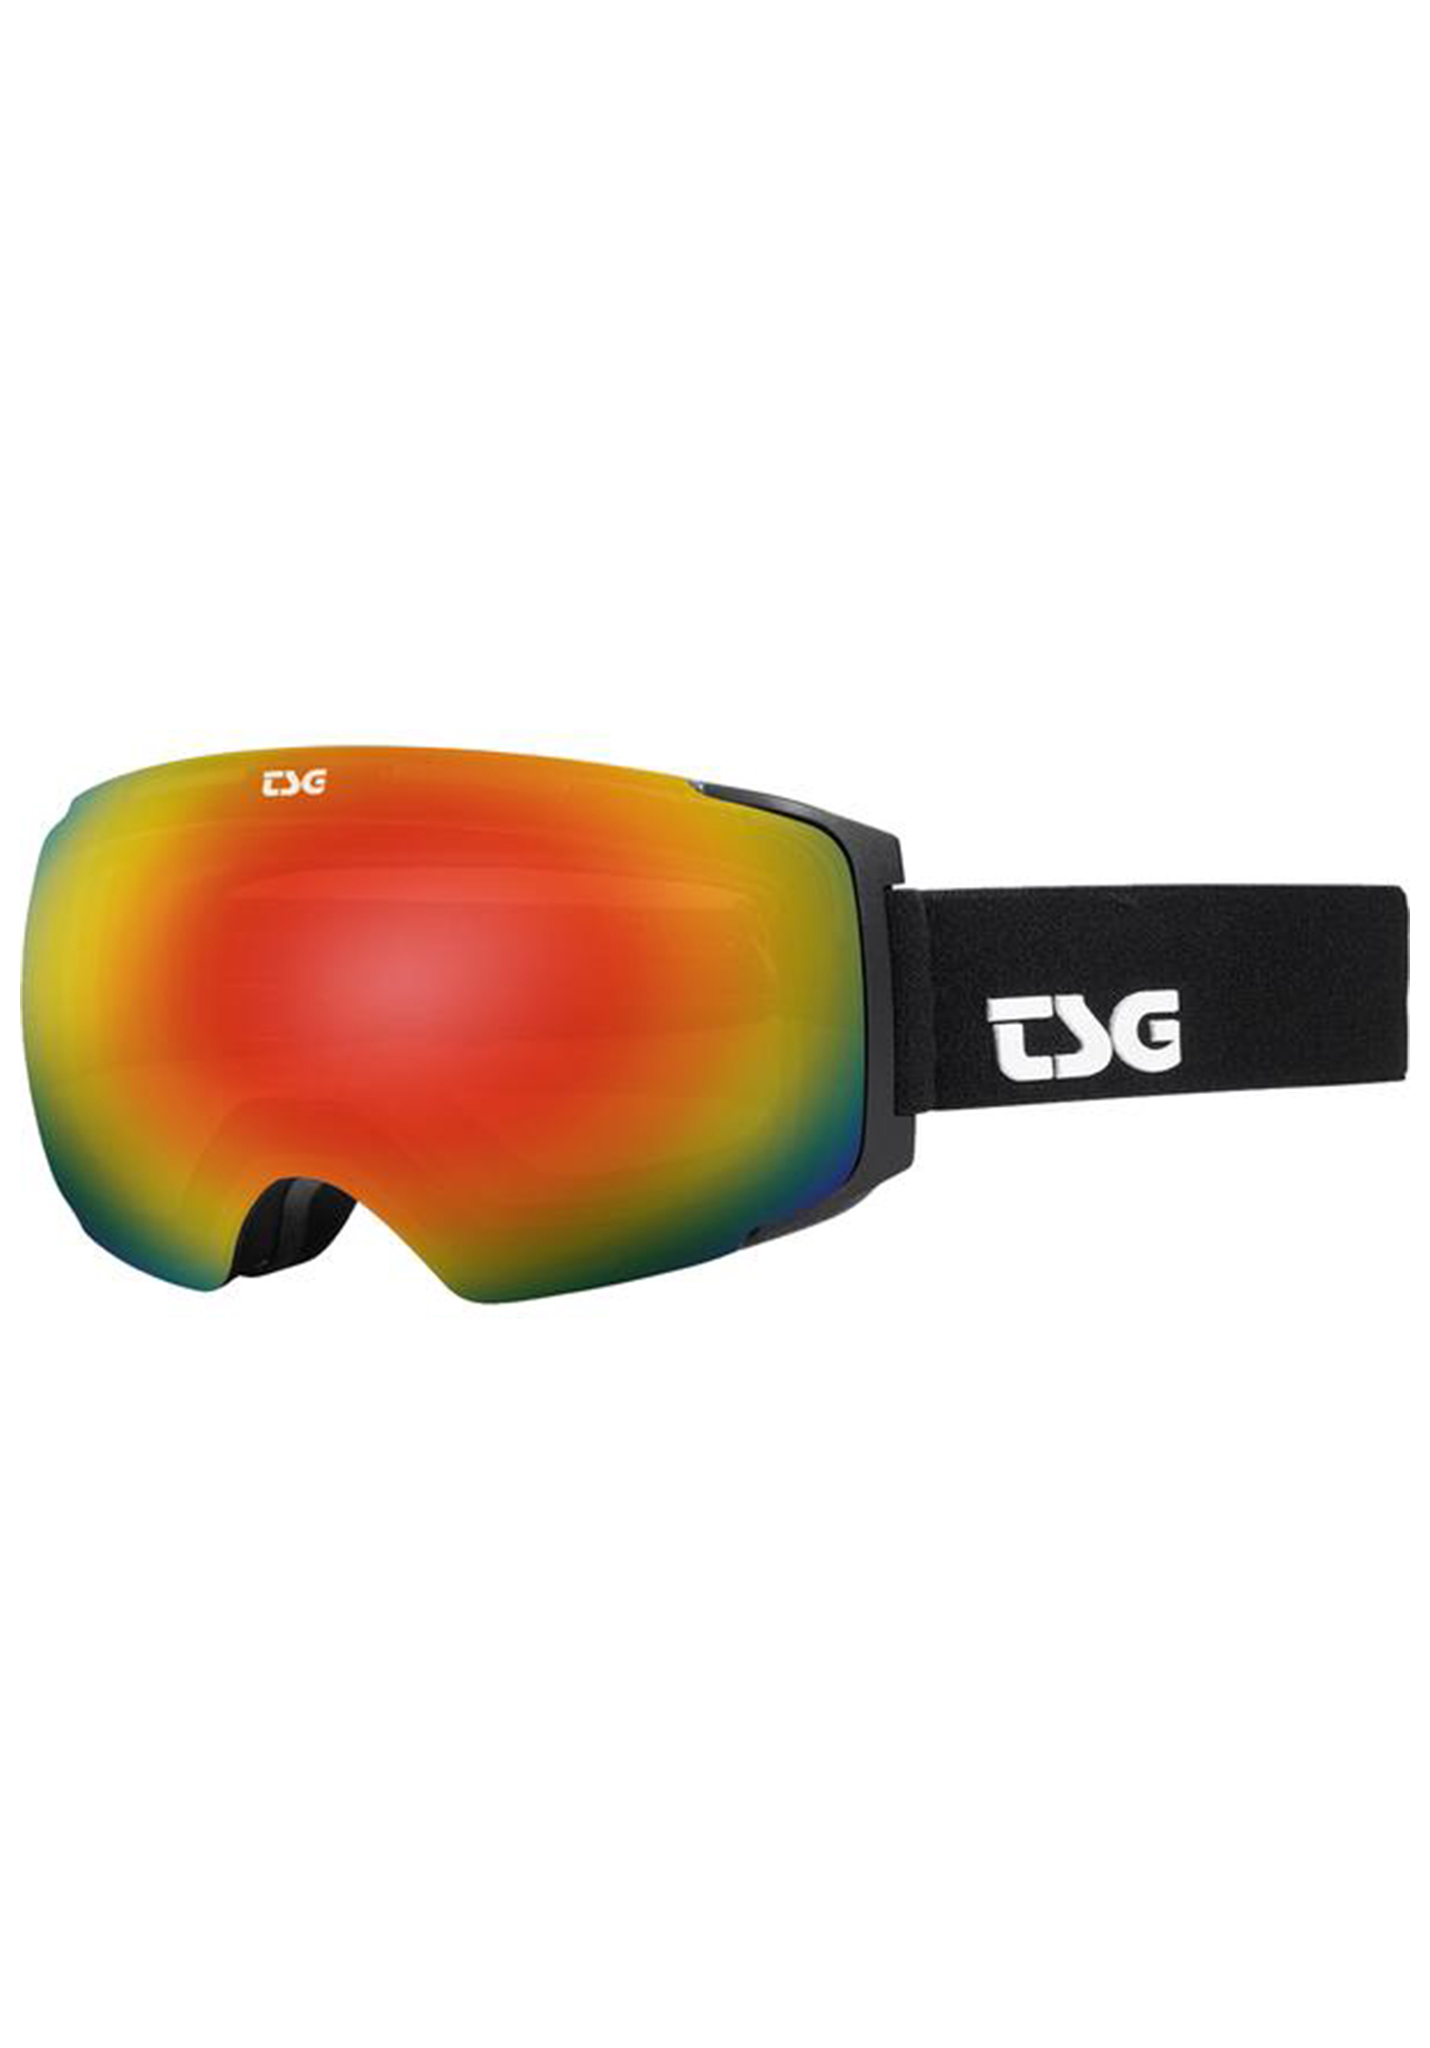 TSG Two Snowboardbrillen schwarz/regenbogen chrom One Size